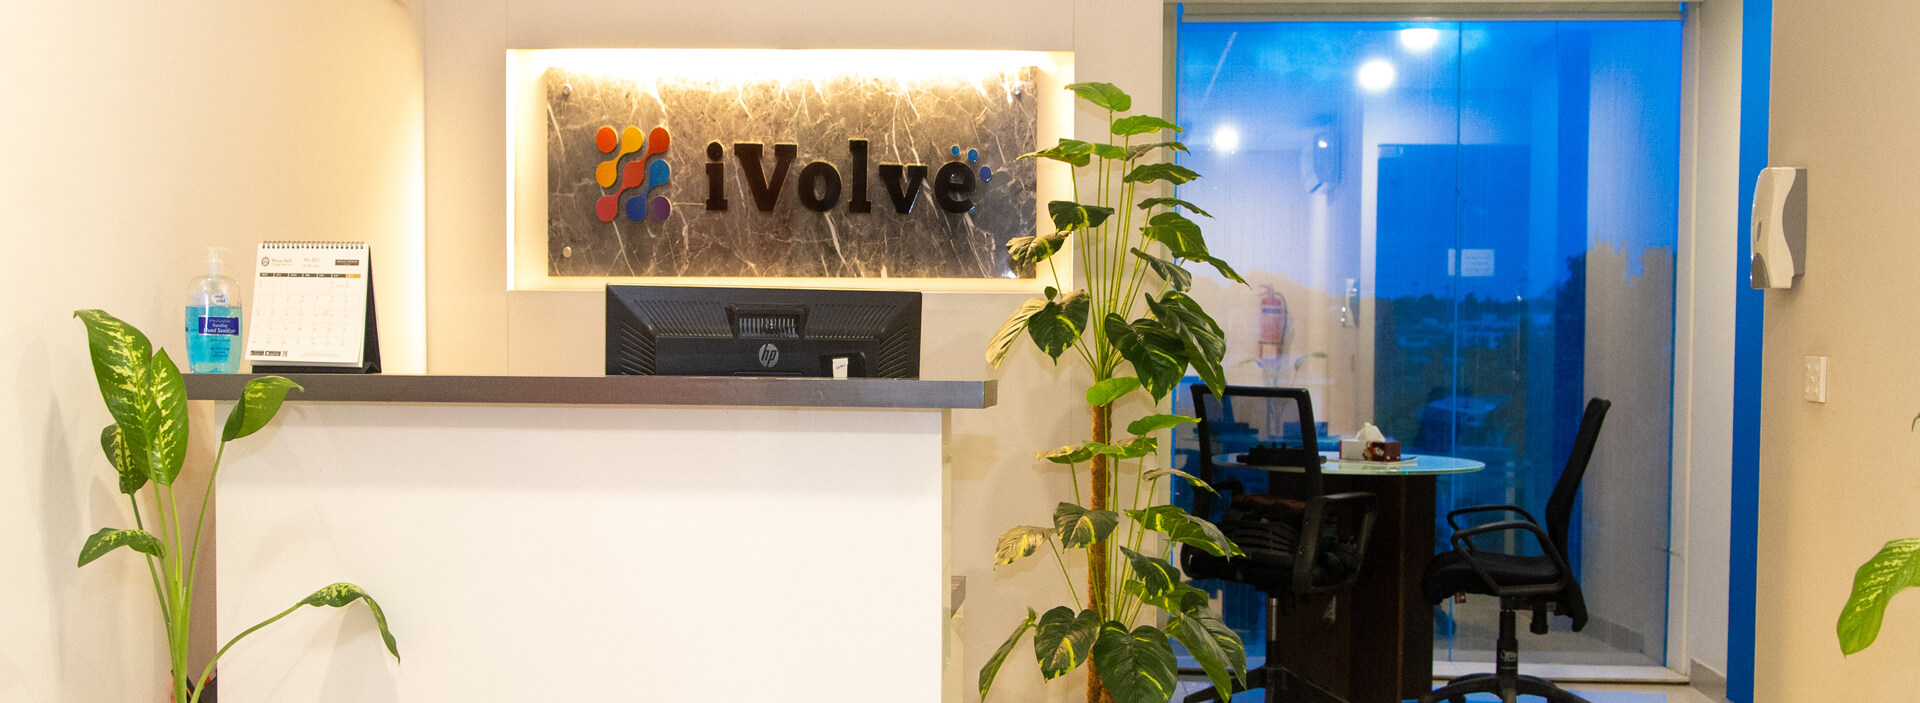 ivolve_Technologies_office